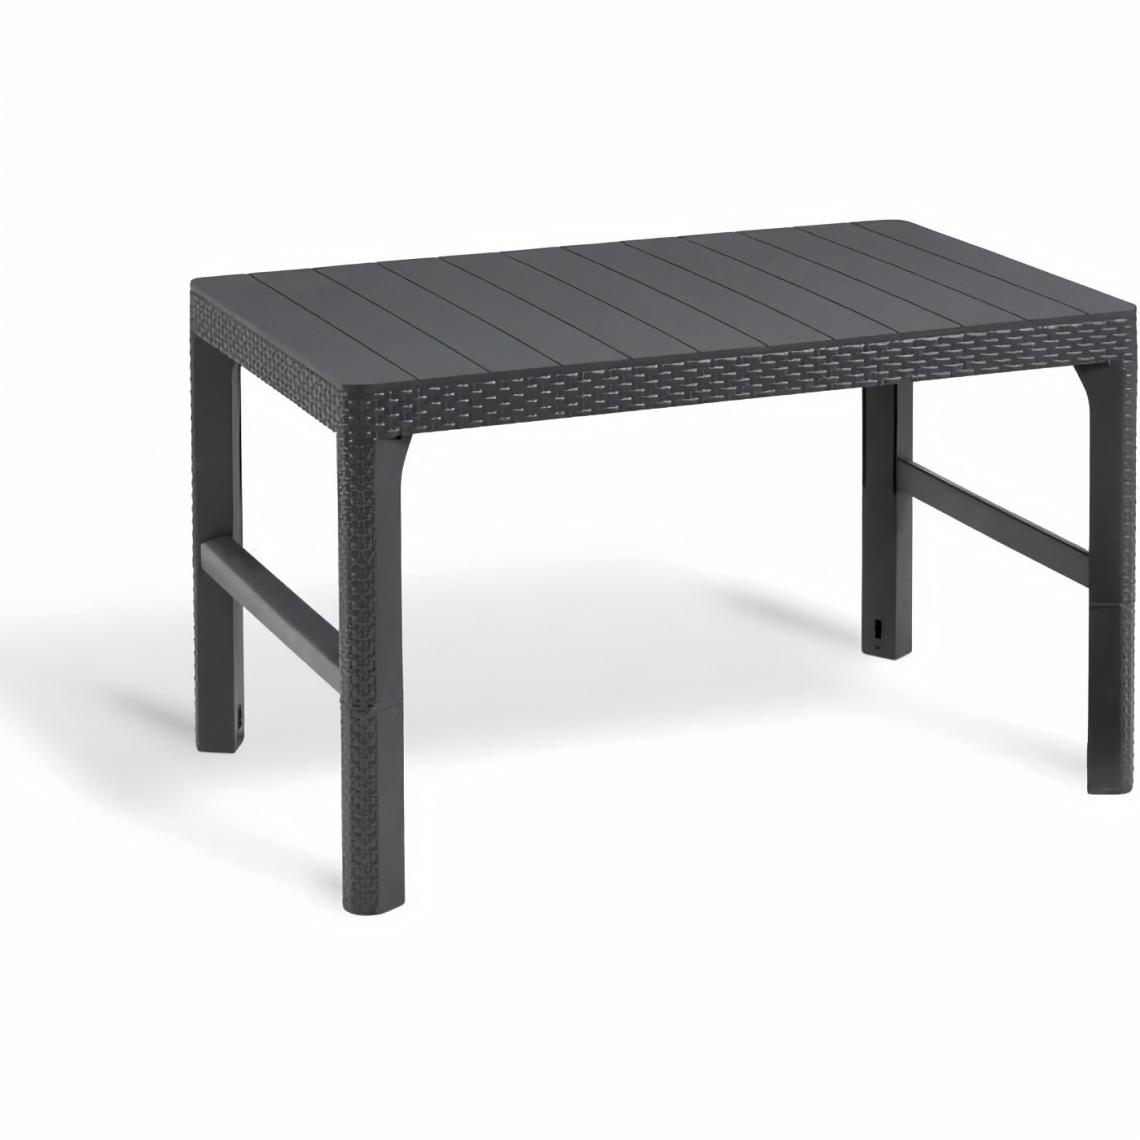 Allibert - ALLIBERT by KETER - Salon de jardin SanRemo Lyon 6 places - table basse 2 positions - imitation rotin tresse - gris graphite - Ensembles tables et chaises